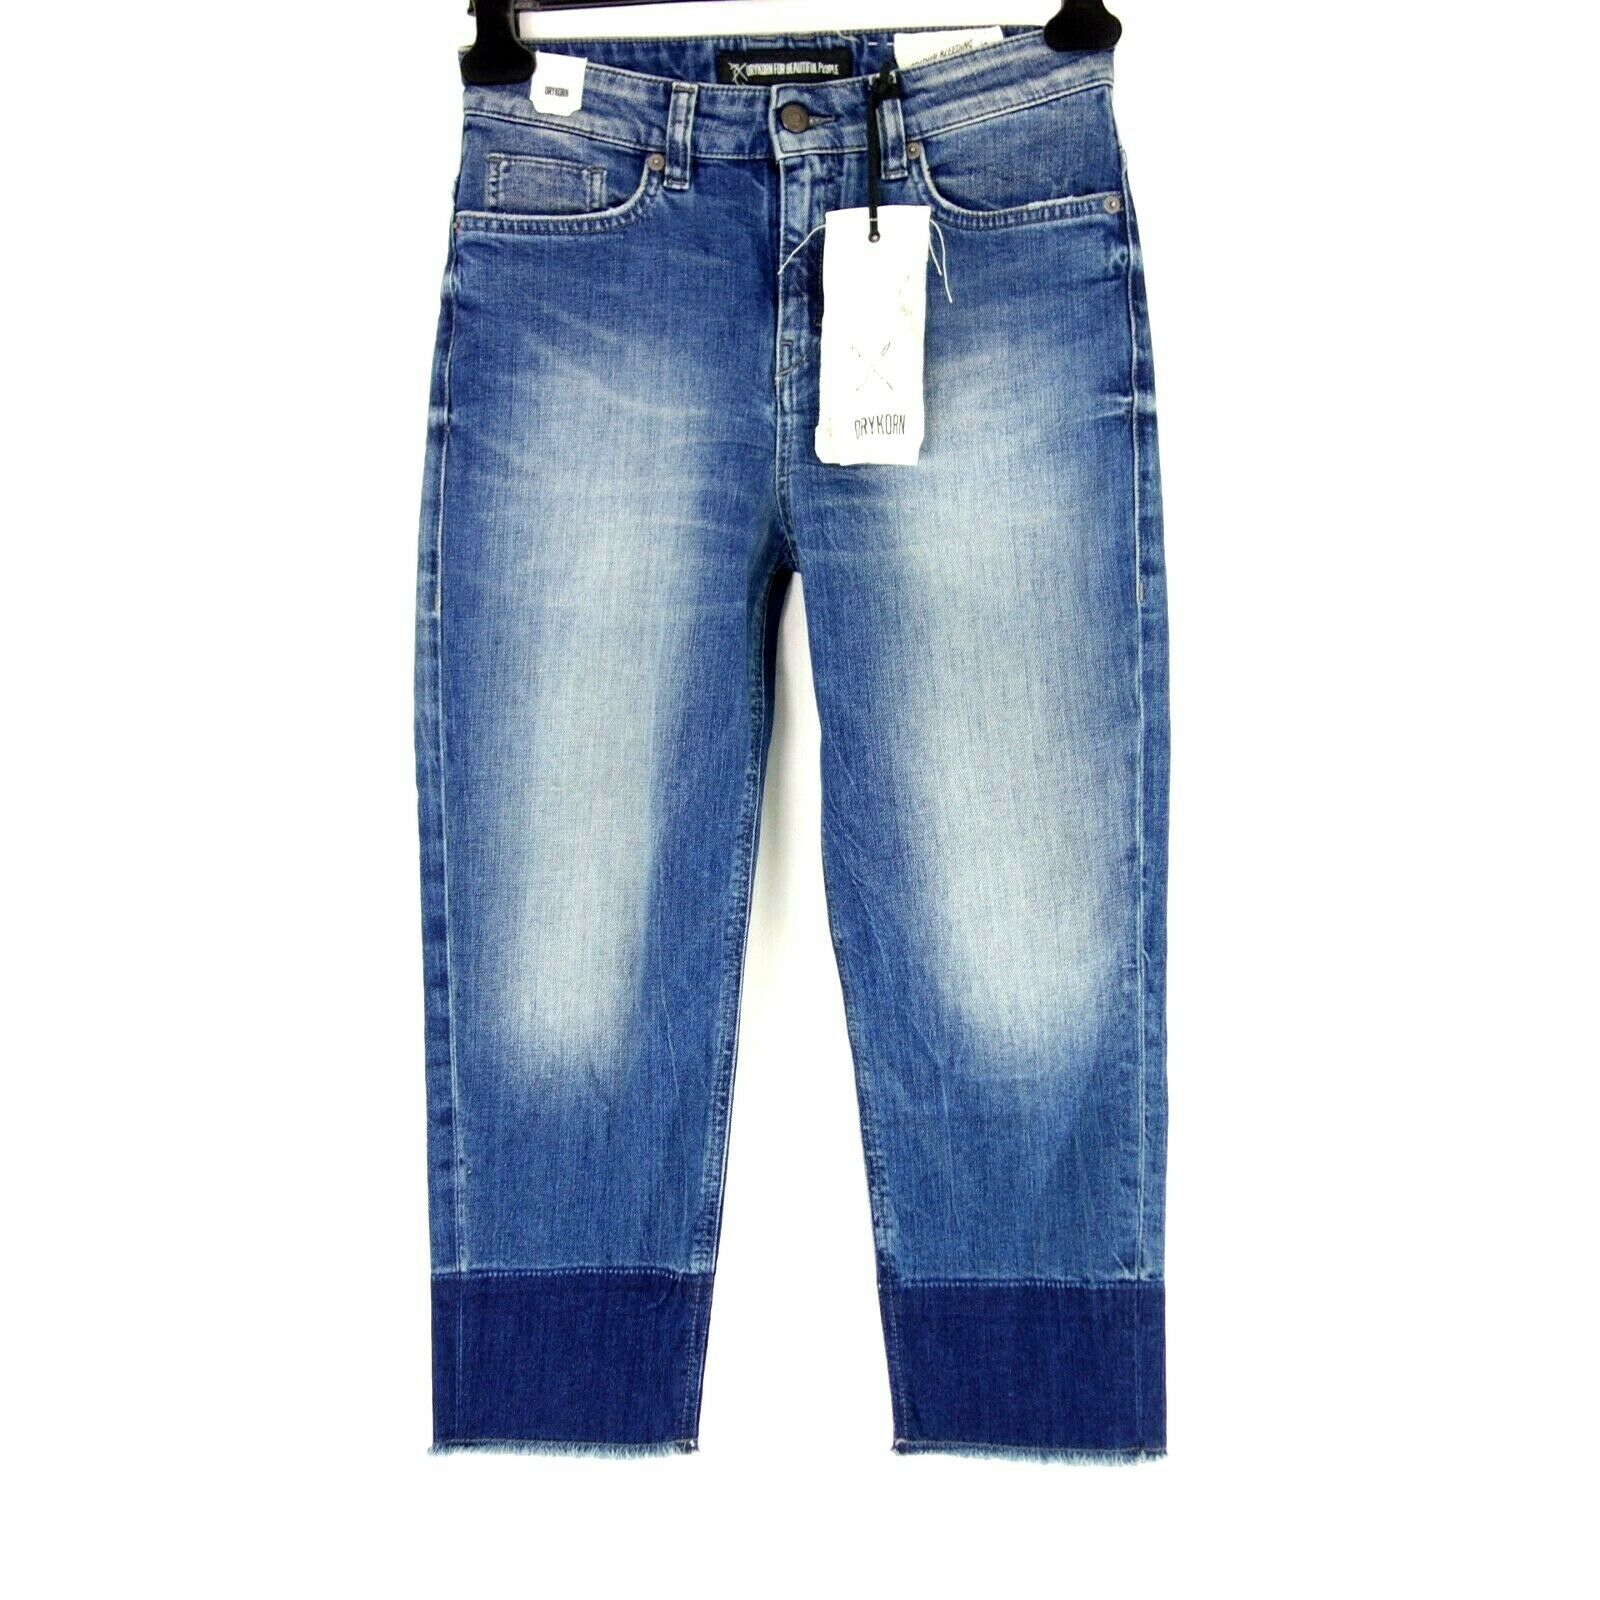 Drykorn Damen Jeans Hose Night Größe W25 W27 Blau Ankle Long Relaxed Np 140 Neu - W27